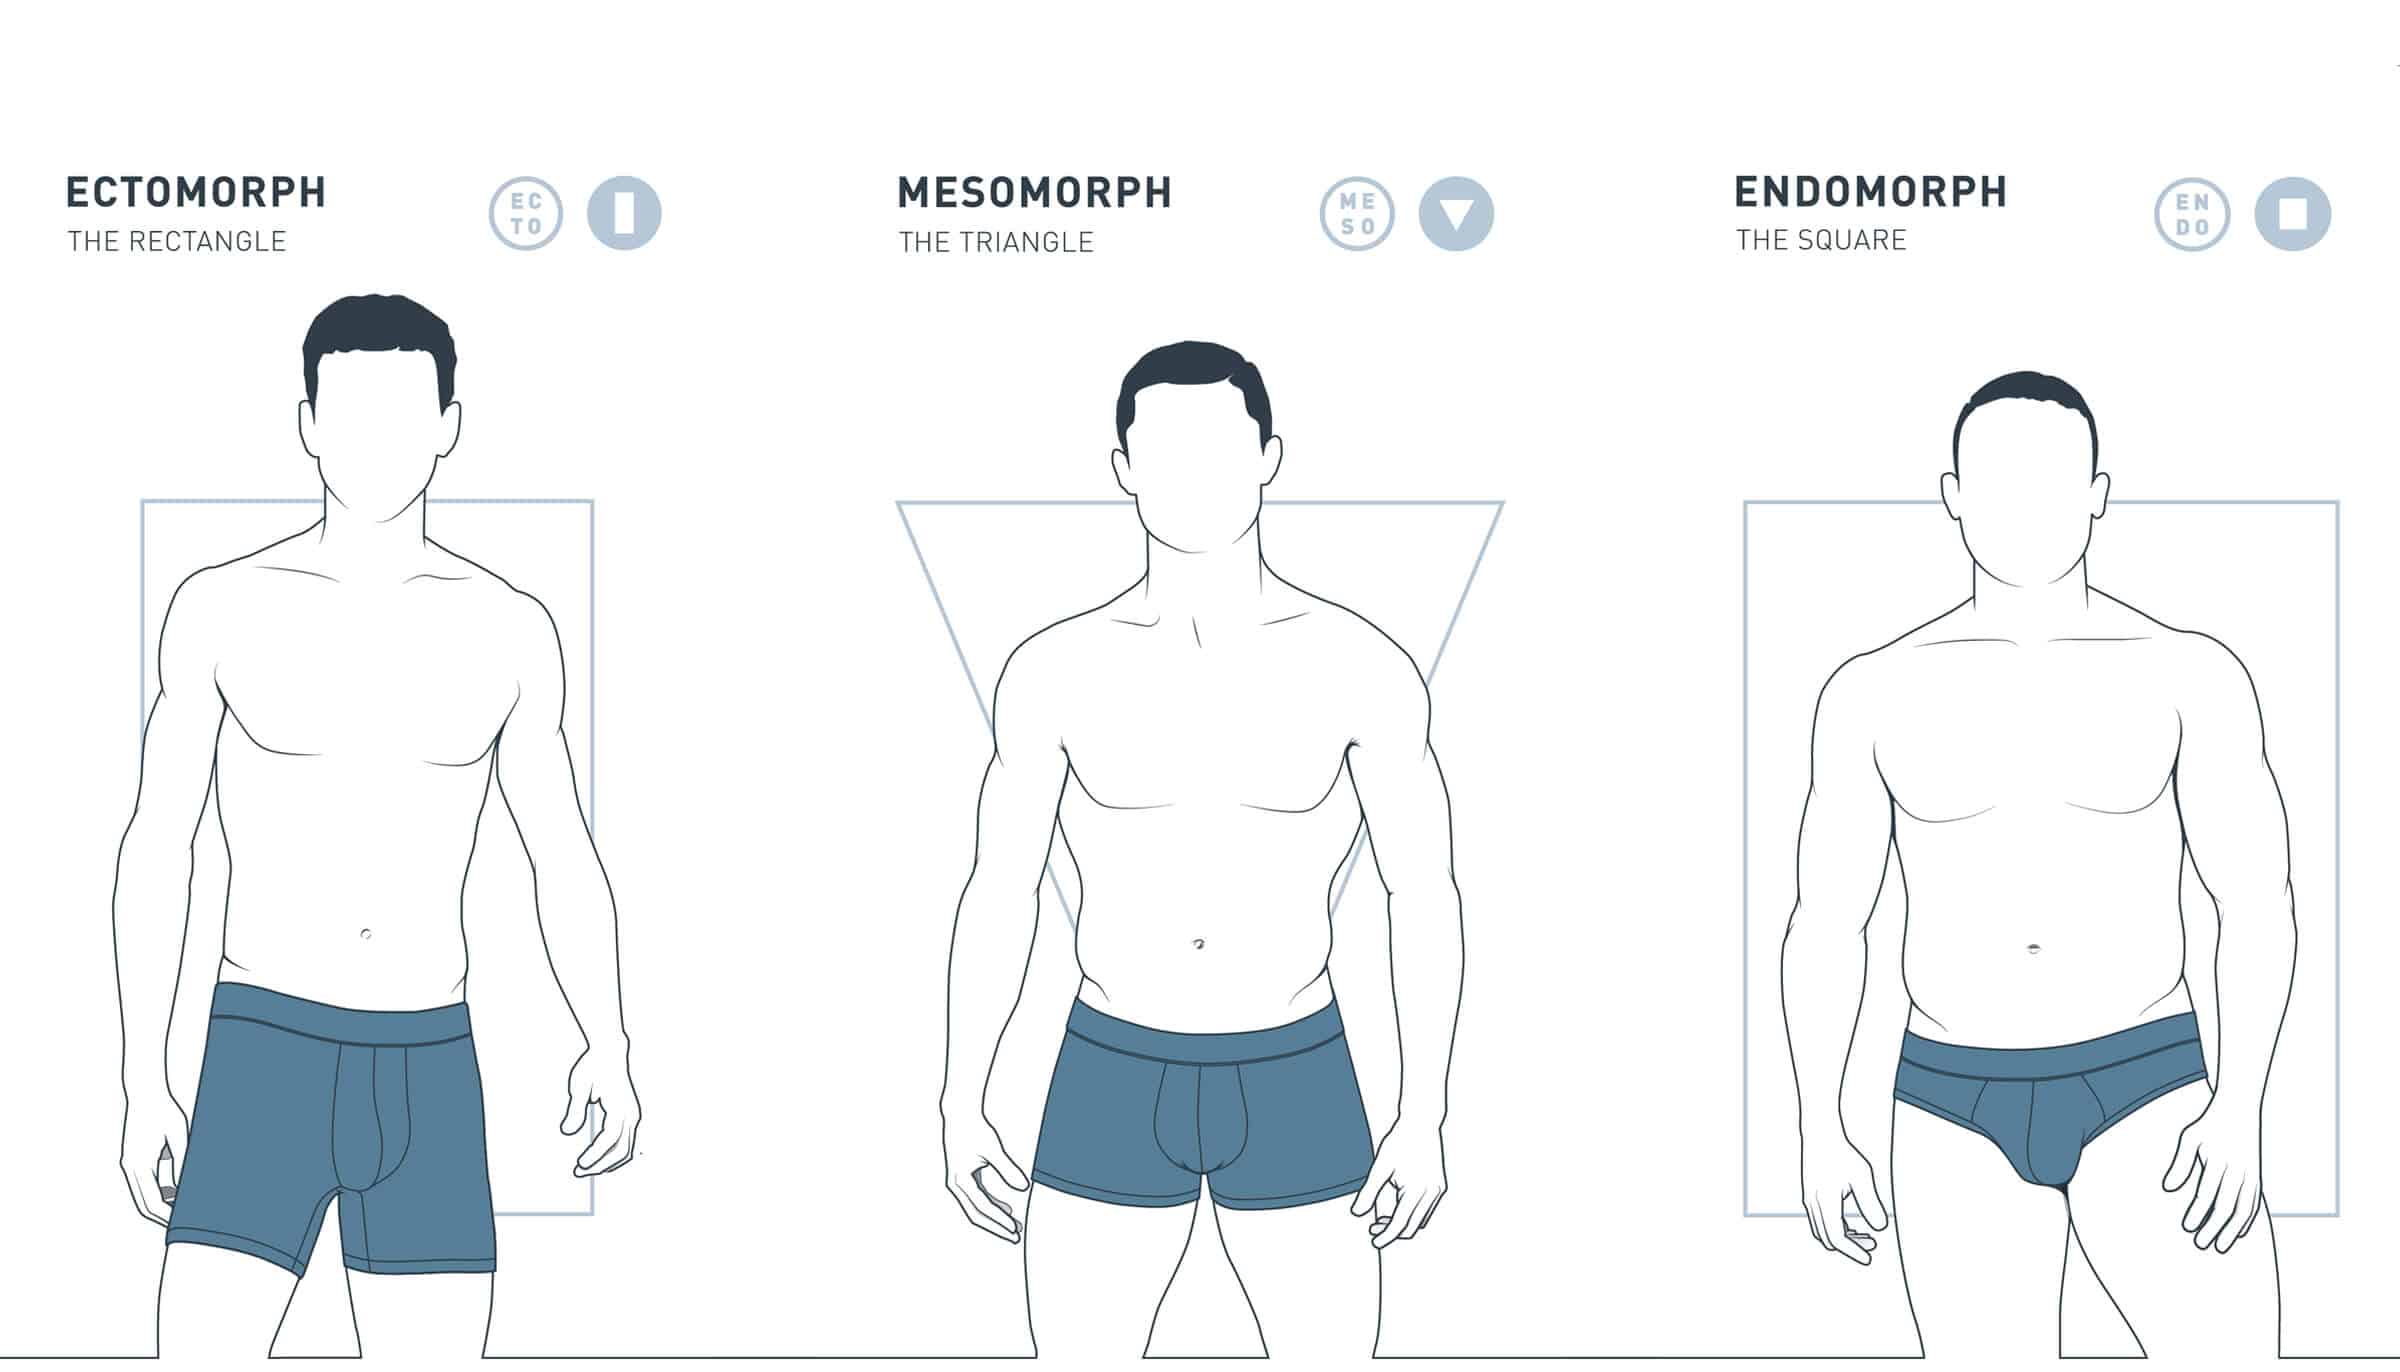 Три типа телосложения человека